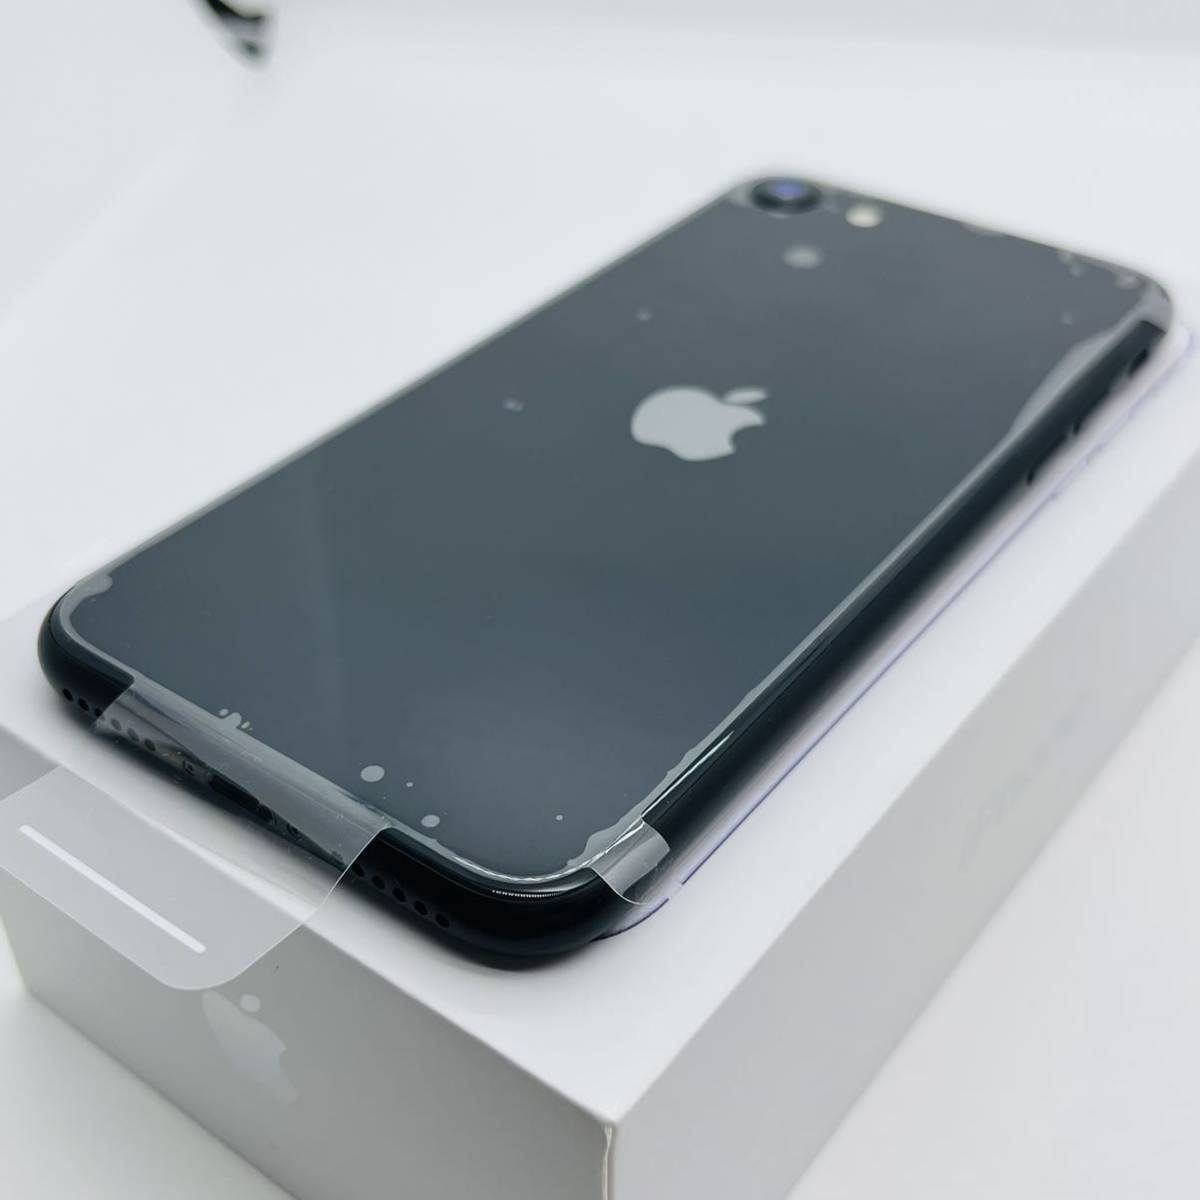 最高品質の (SE2) 第2世代 SE iPhone ブラック SIMフリー GB 256